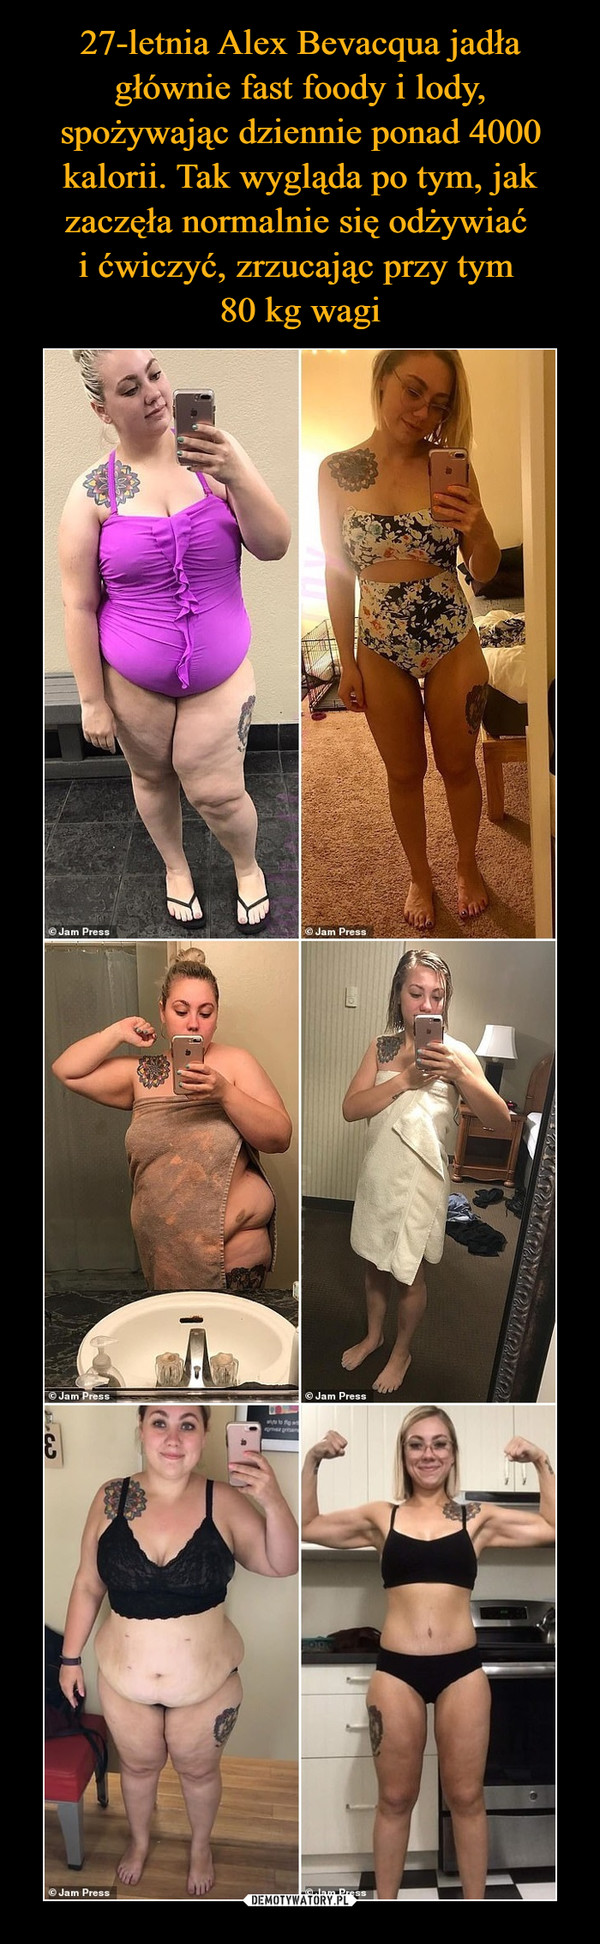 27-letnia Alex Bevacqua jadła głównie fast foody i lody, spożywając dziennie ponad 4000 kalorii. Tak wygląda po tym, jak zaczęła normalnie się odżywiać 
i ćwiczyć, zrzucając przy tym 
80 kg wagi